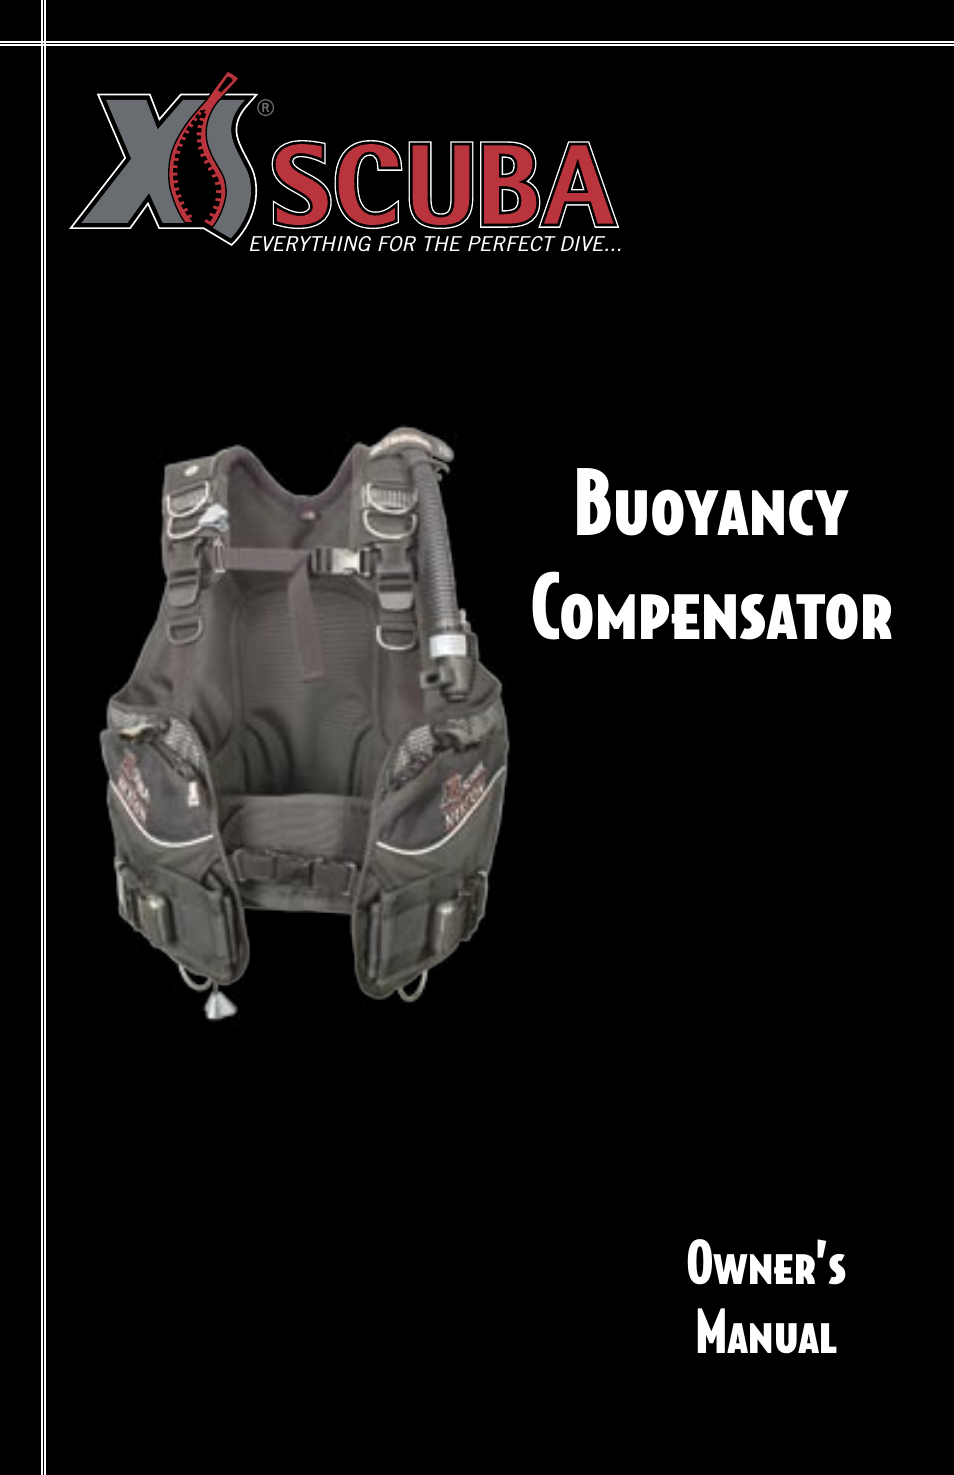 Buoyancy Compensator